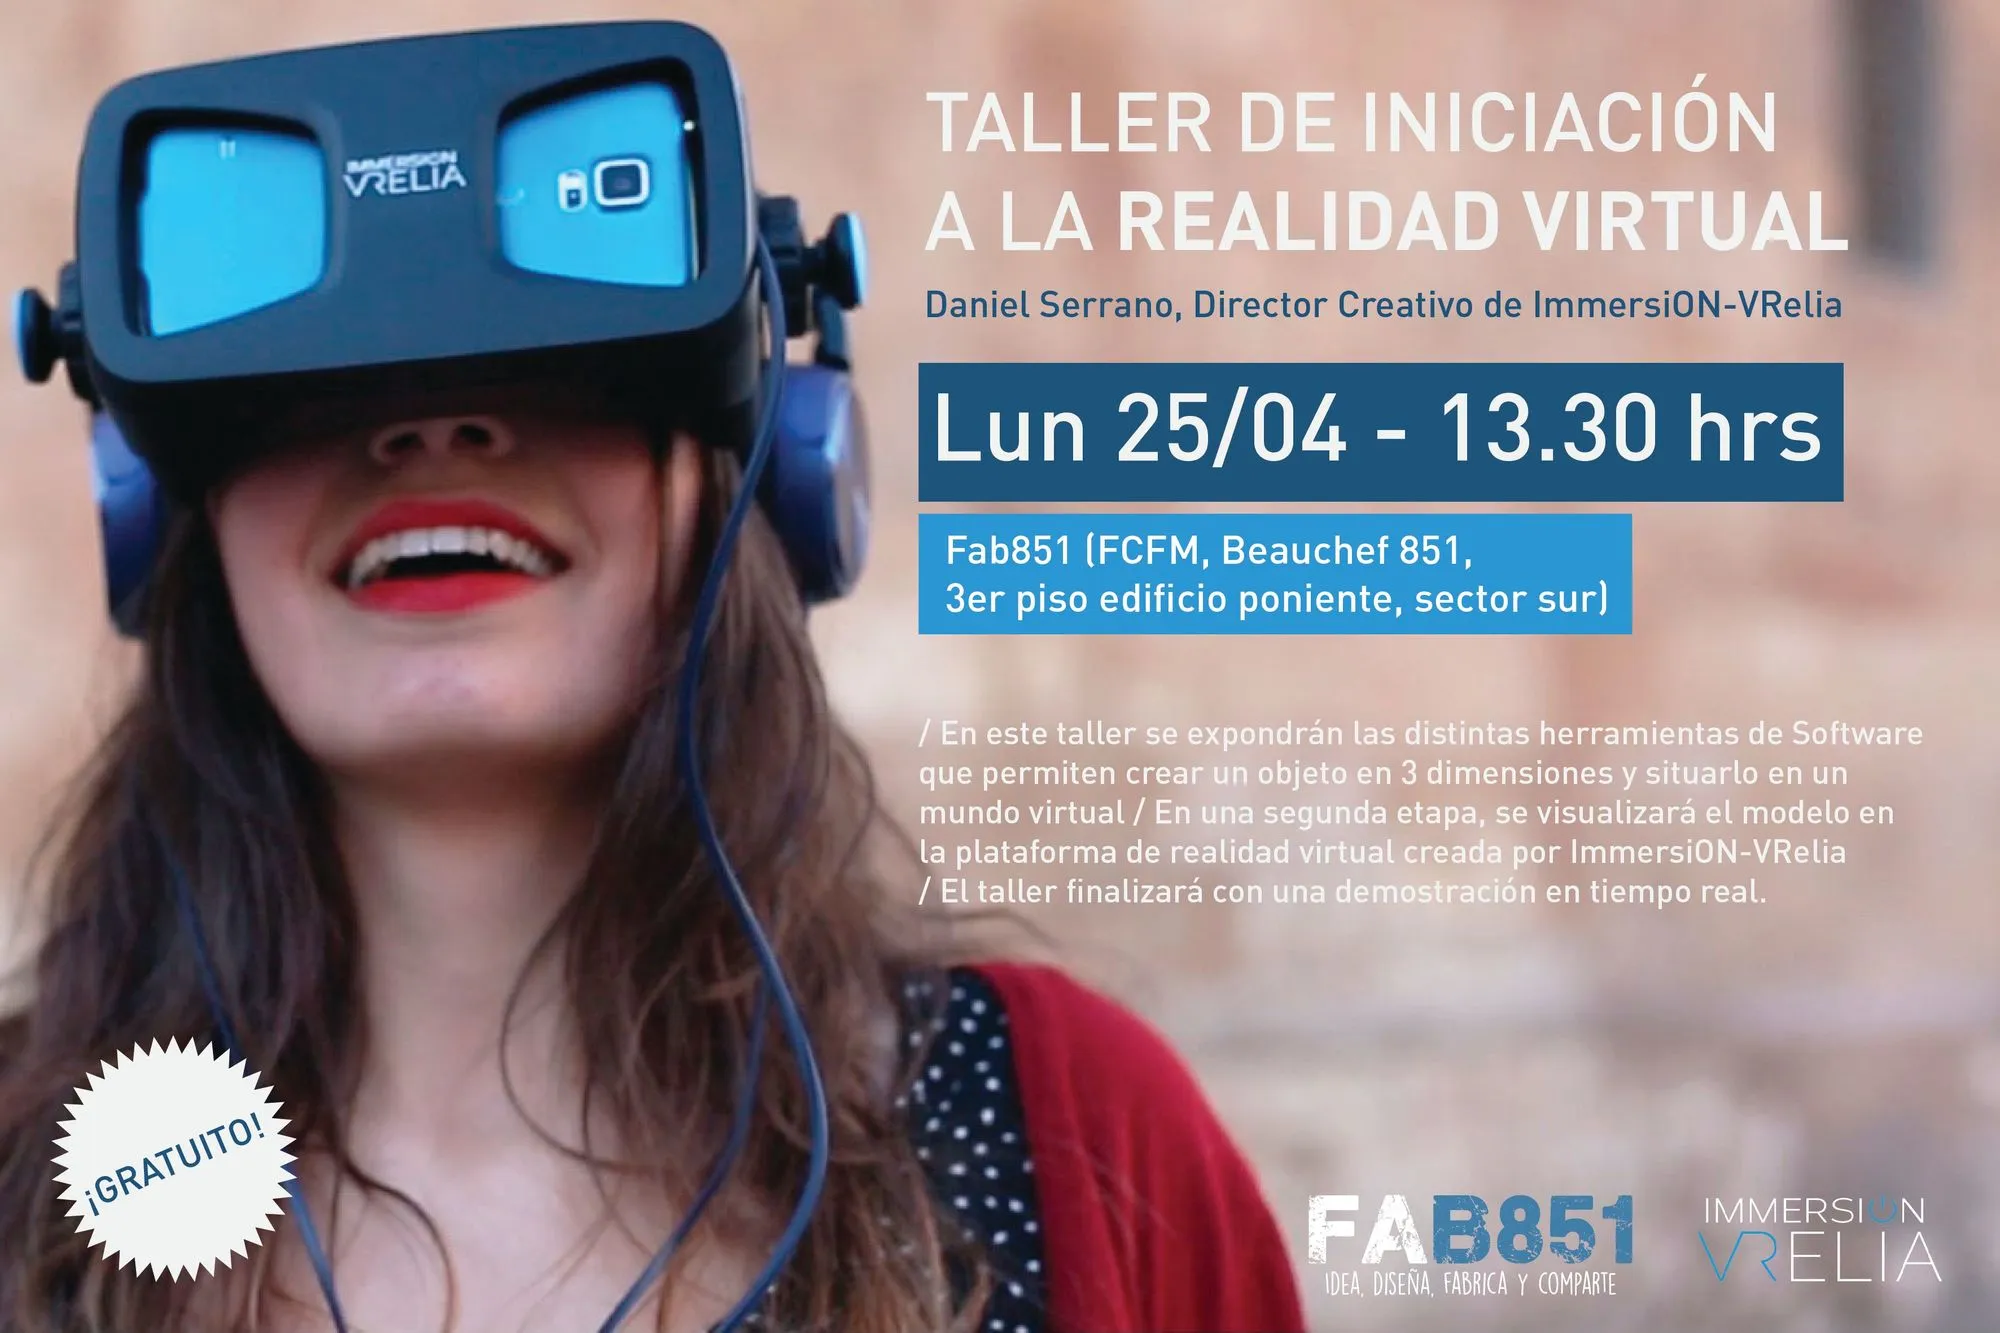 Taller de iniciación a la realidad virtual organizado por la Facultad de Ciencias Físicas y Matemáticas de Chile